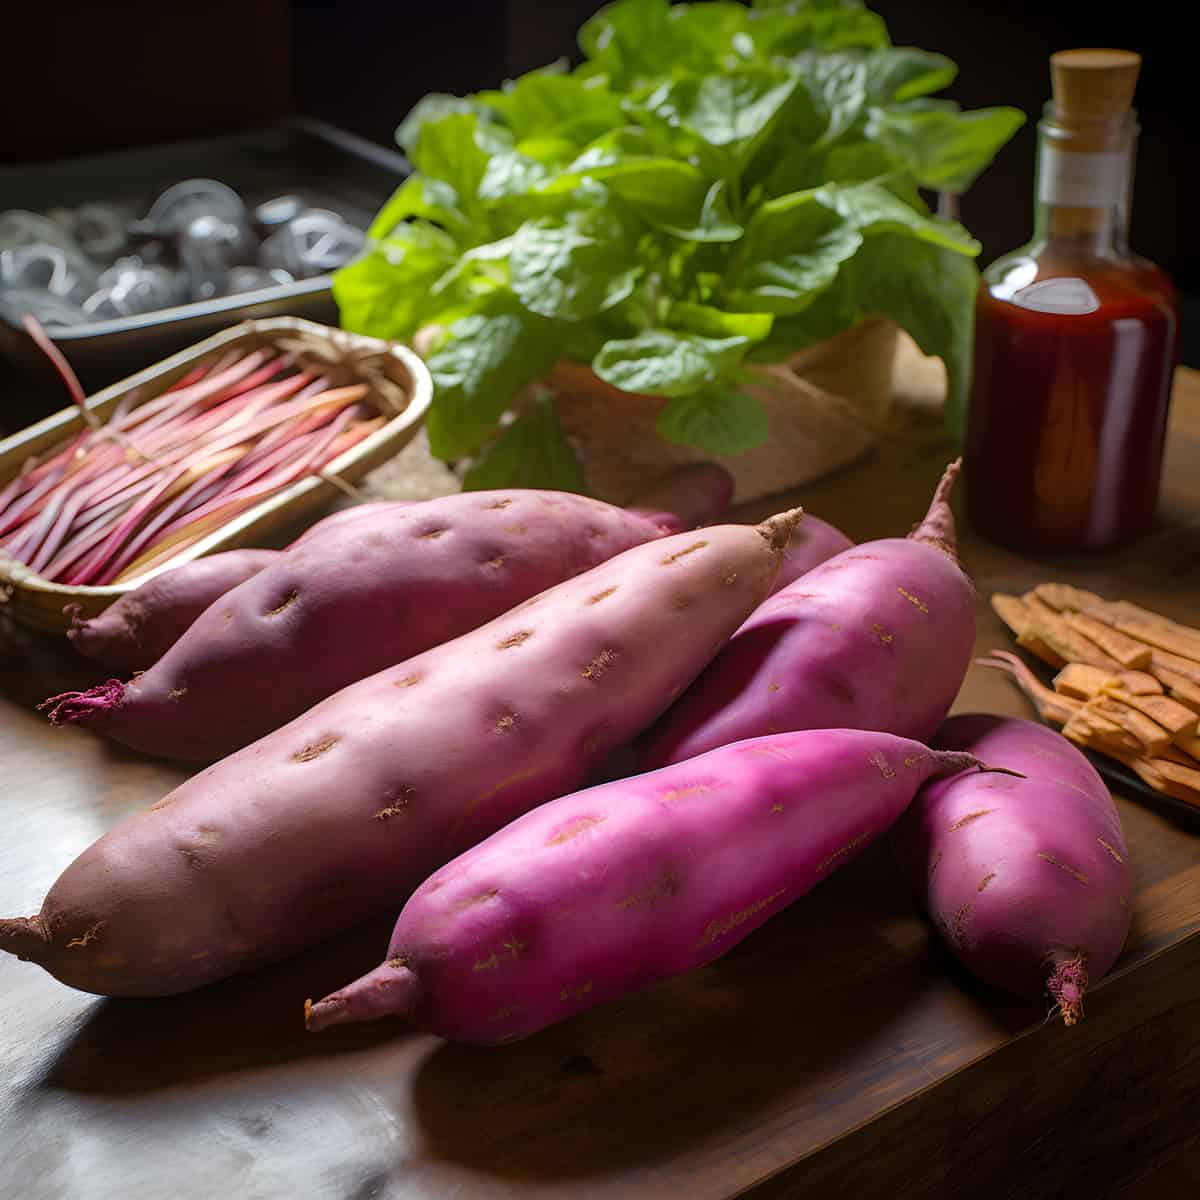 Murasaki Sweet Potatoes on a kitchen counter